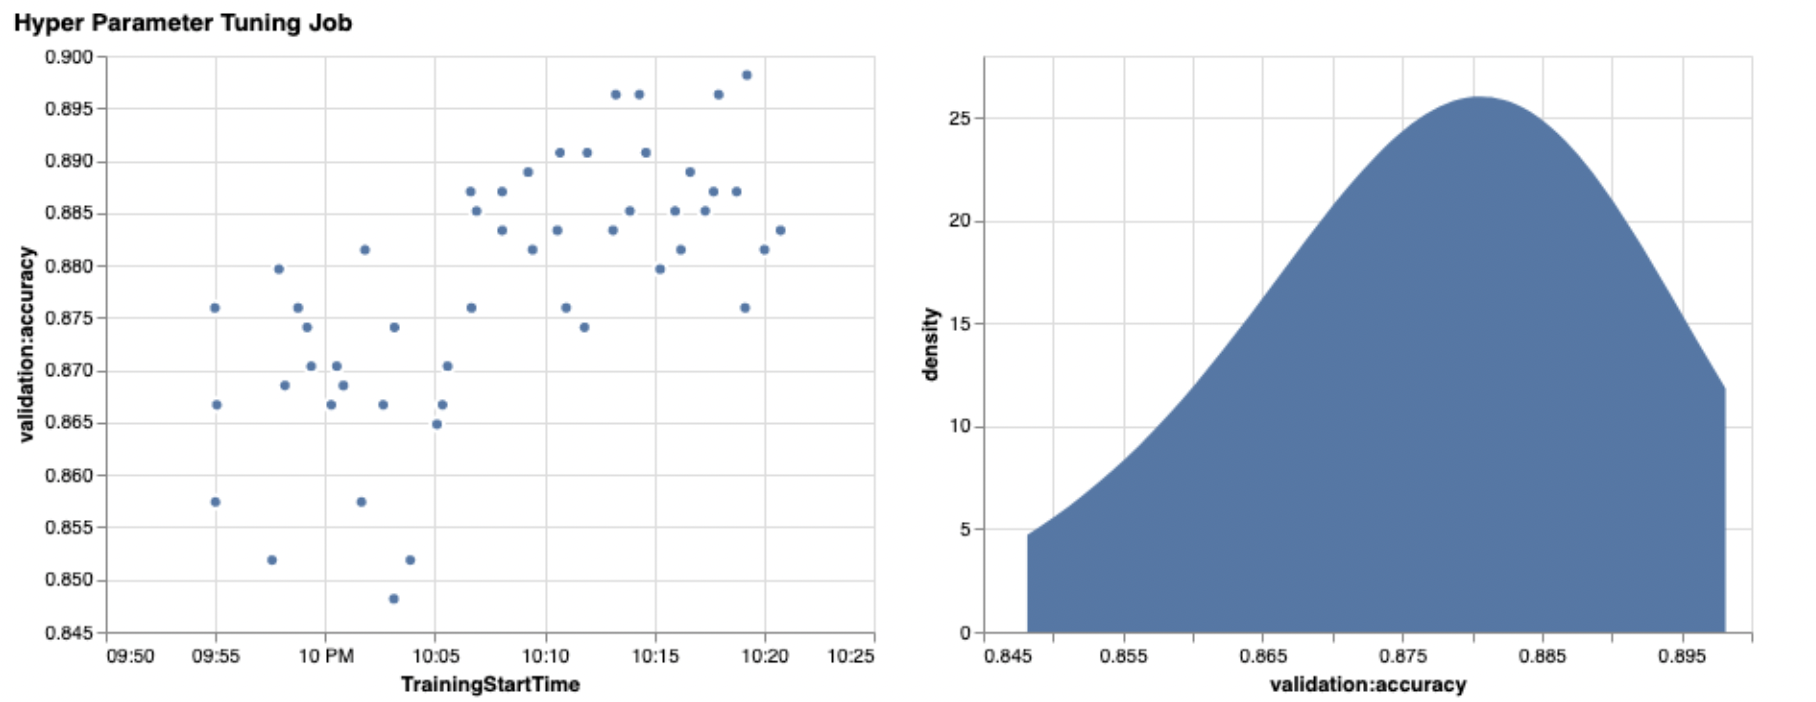 Kaksi kaaviota, jotka esittävät HPO:n polkuja. Vasen kaavio näyttää vahvistustarkkuuden ajan kuluessa. Oikeassa kaaviossa näkyy tiheyskaavio validointitarkkuusarvoille